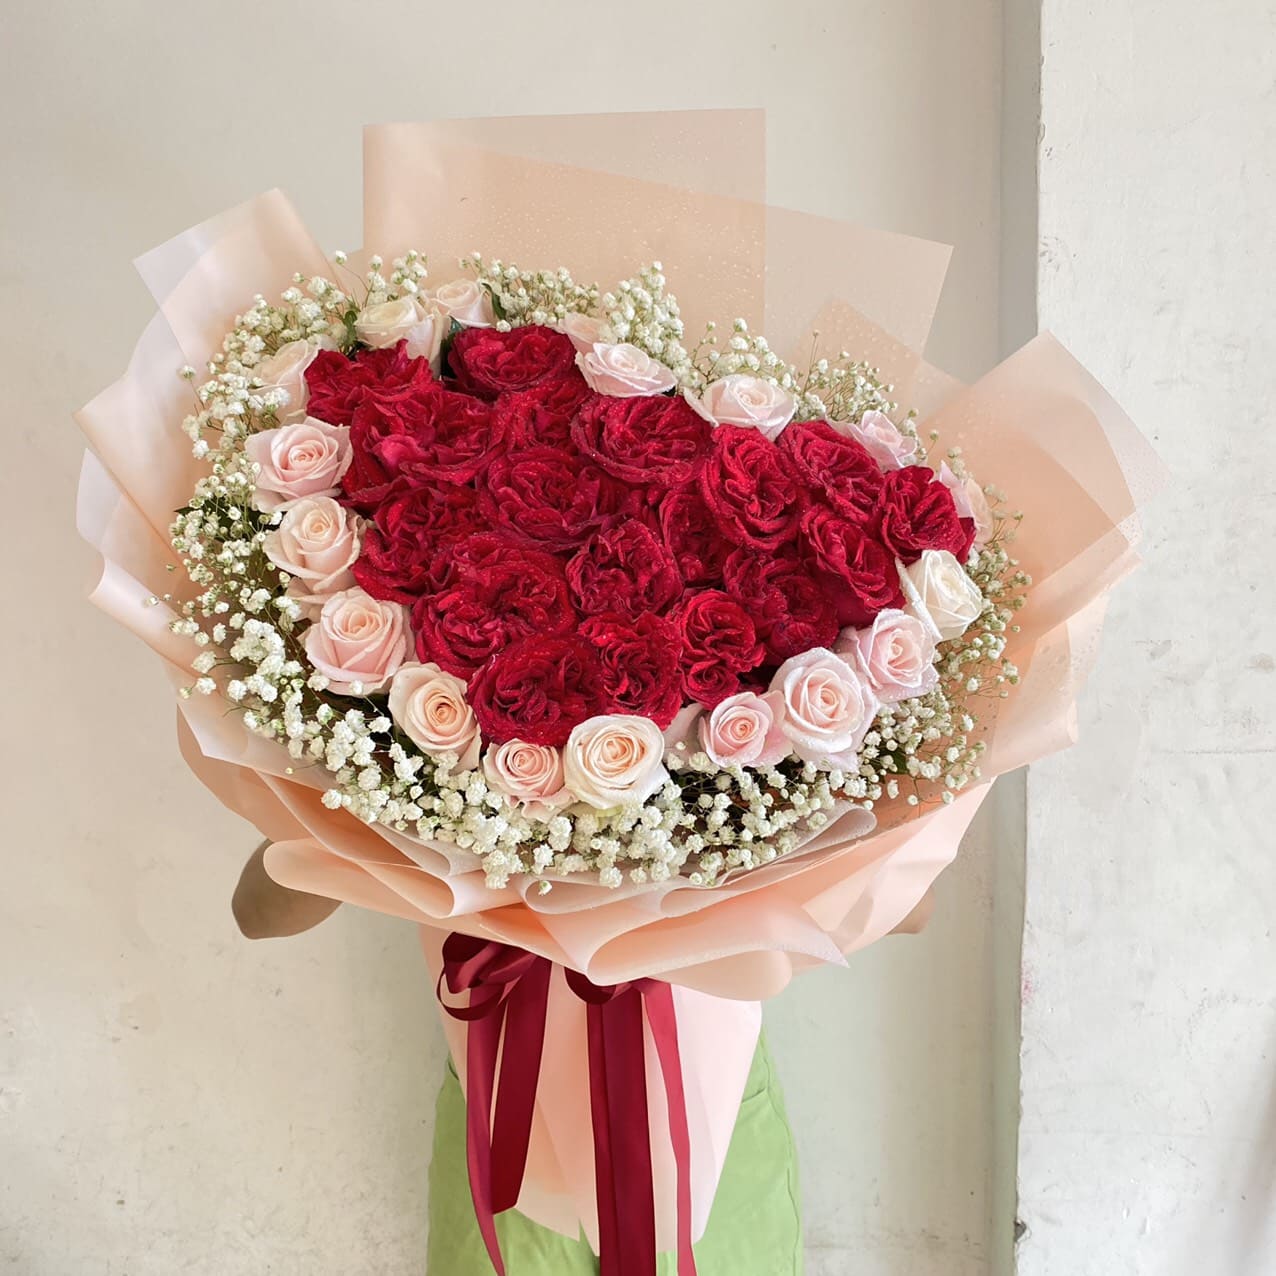 Bó hoa hồng đỏ chúc mừng Valentine